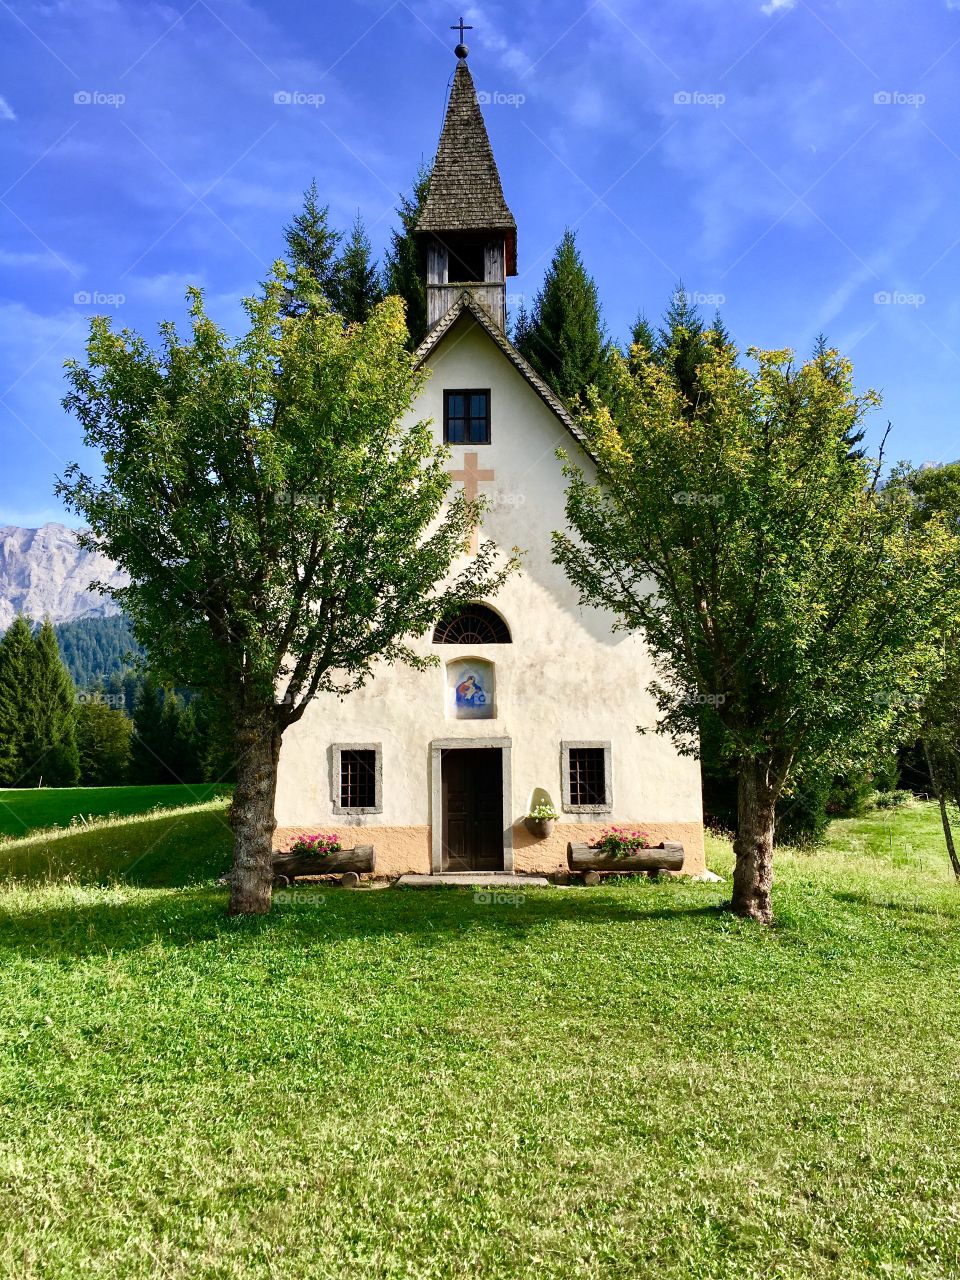 Church of San Giovanni Battista in the municipality of Mezzano, Valle di Primiero, eastern Trentino